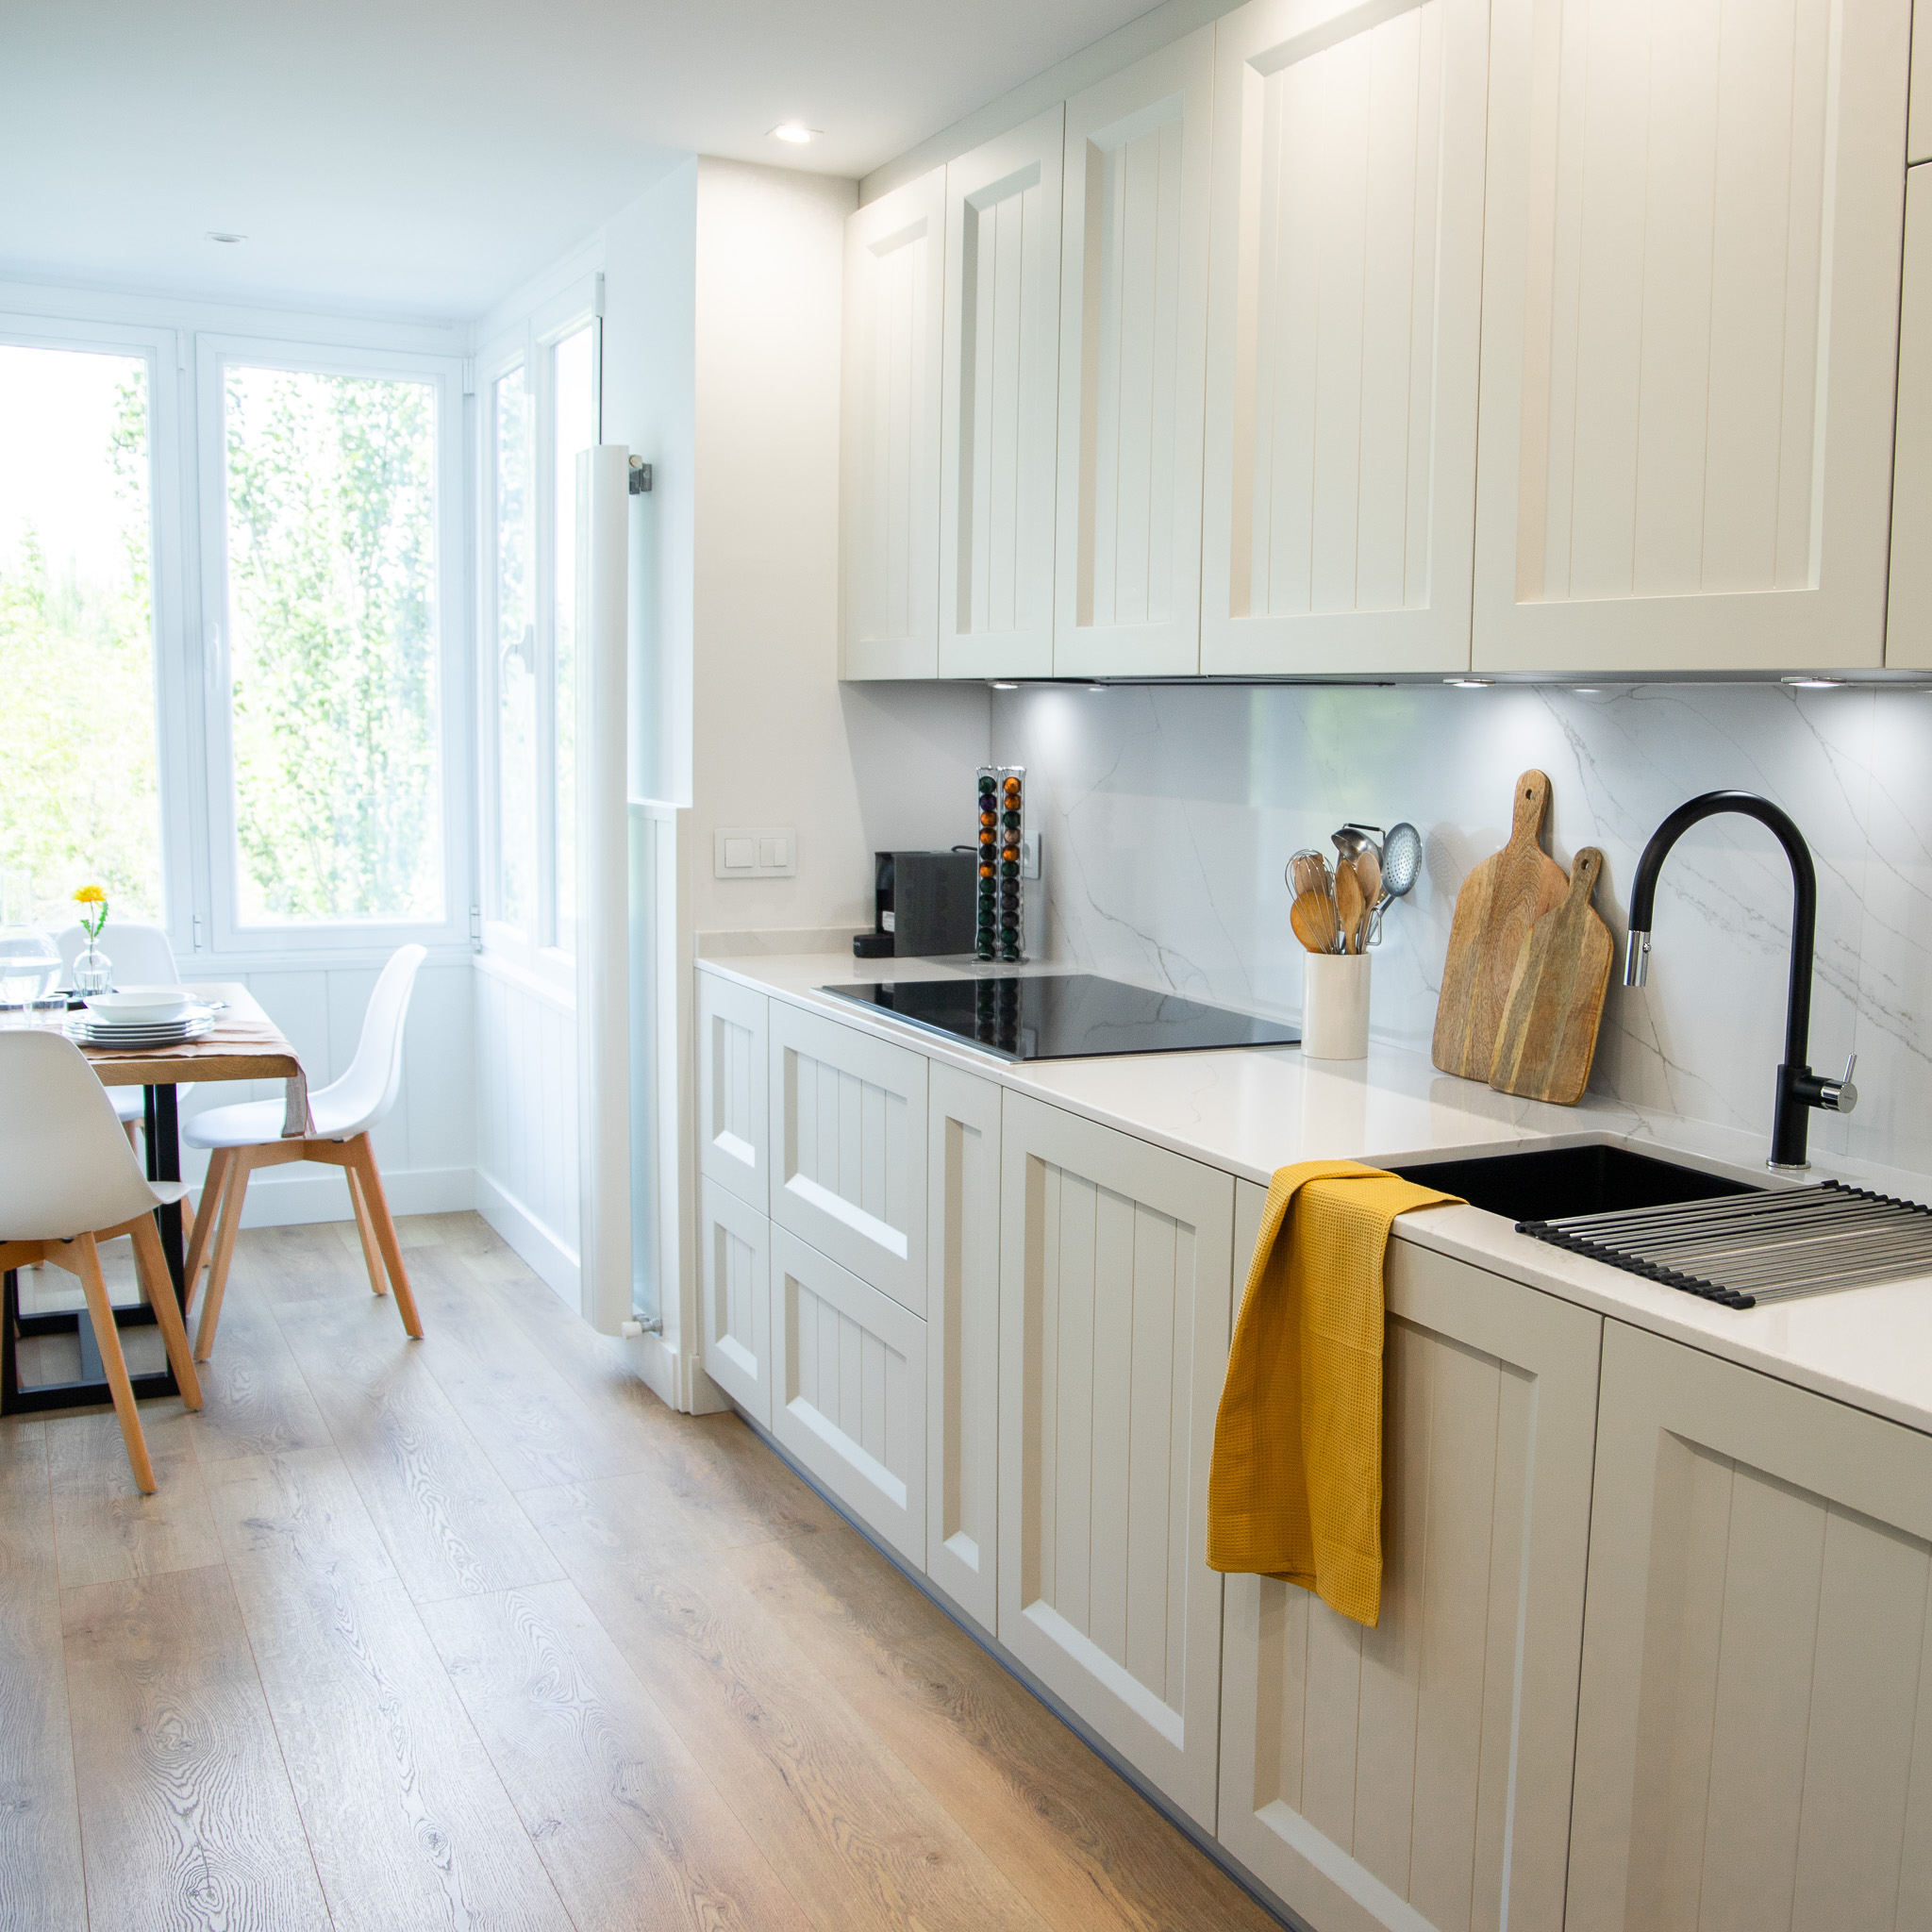 una cocina blanca con accesorios de madera y una iluminación natural única, esta cocina tiene una ventana que ofrece una vista directa a la naturaleza